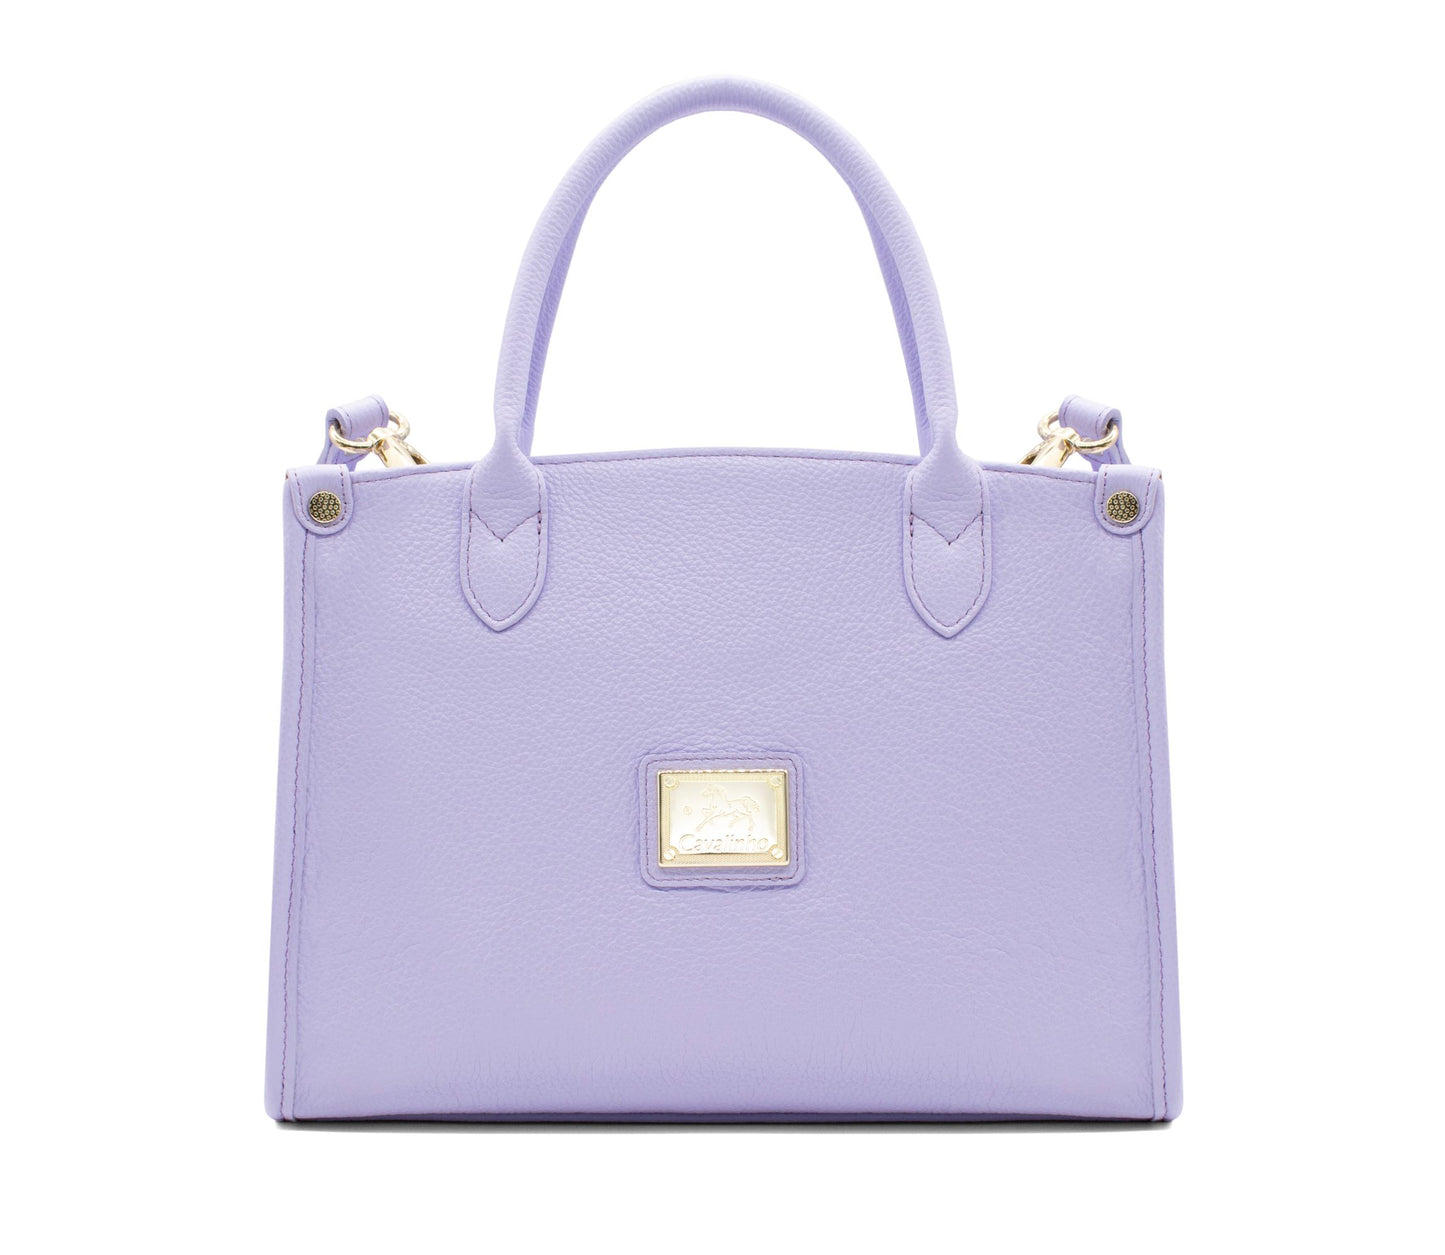 #color_ Lilac | Cavalinho Muse Leather Handbag - Lilac - 18300480.39_1